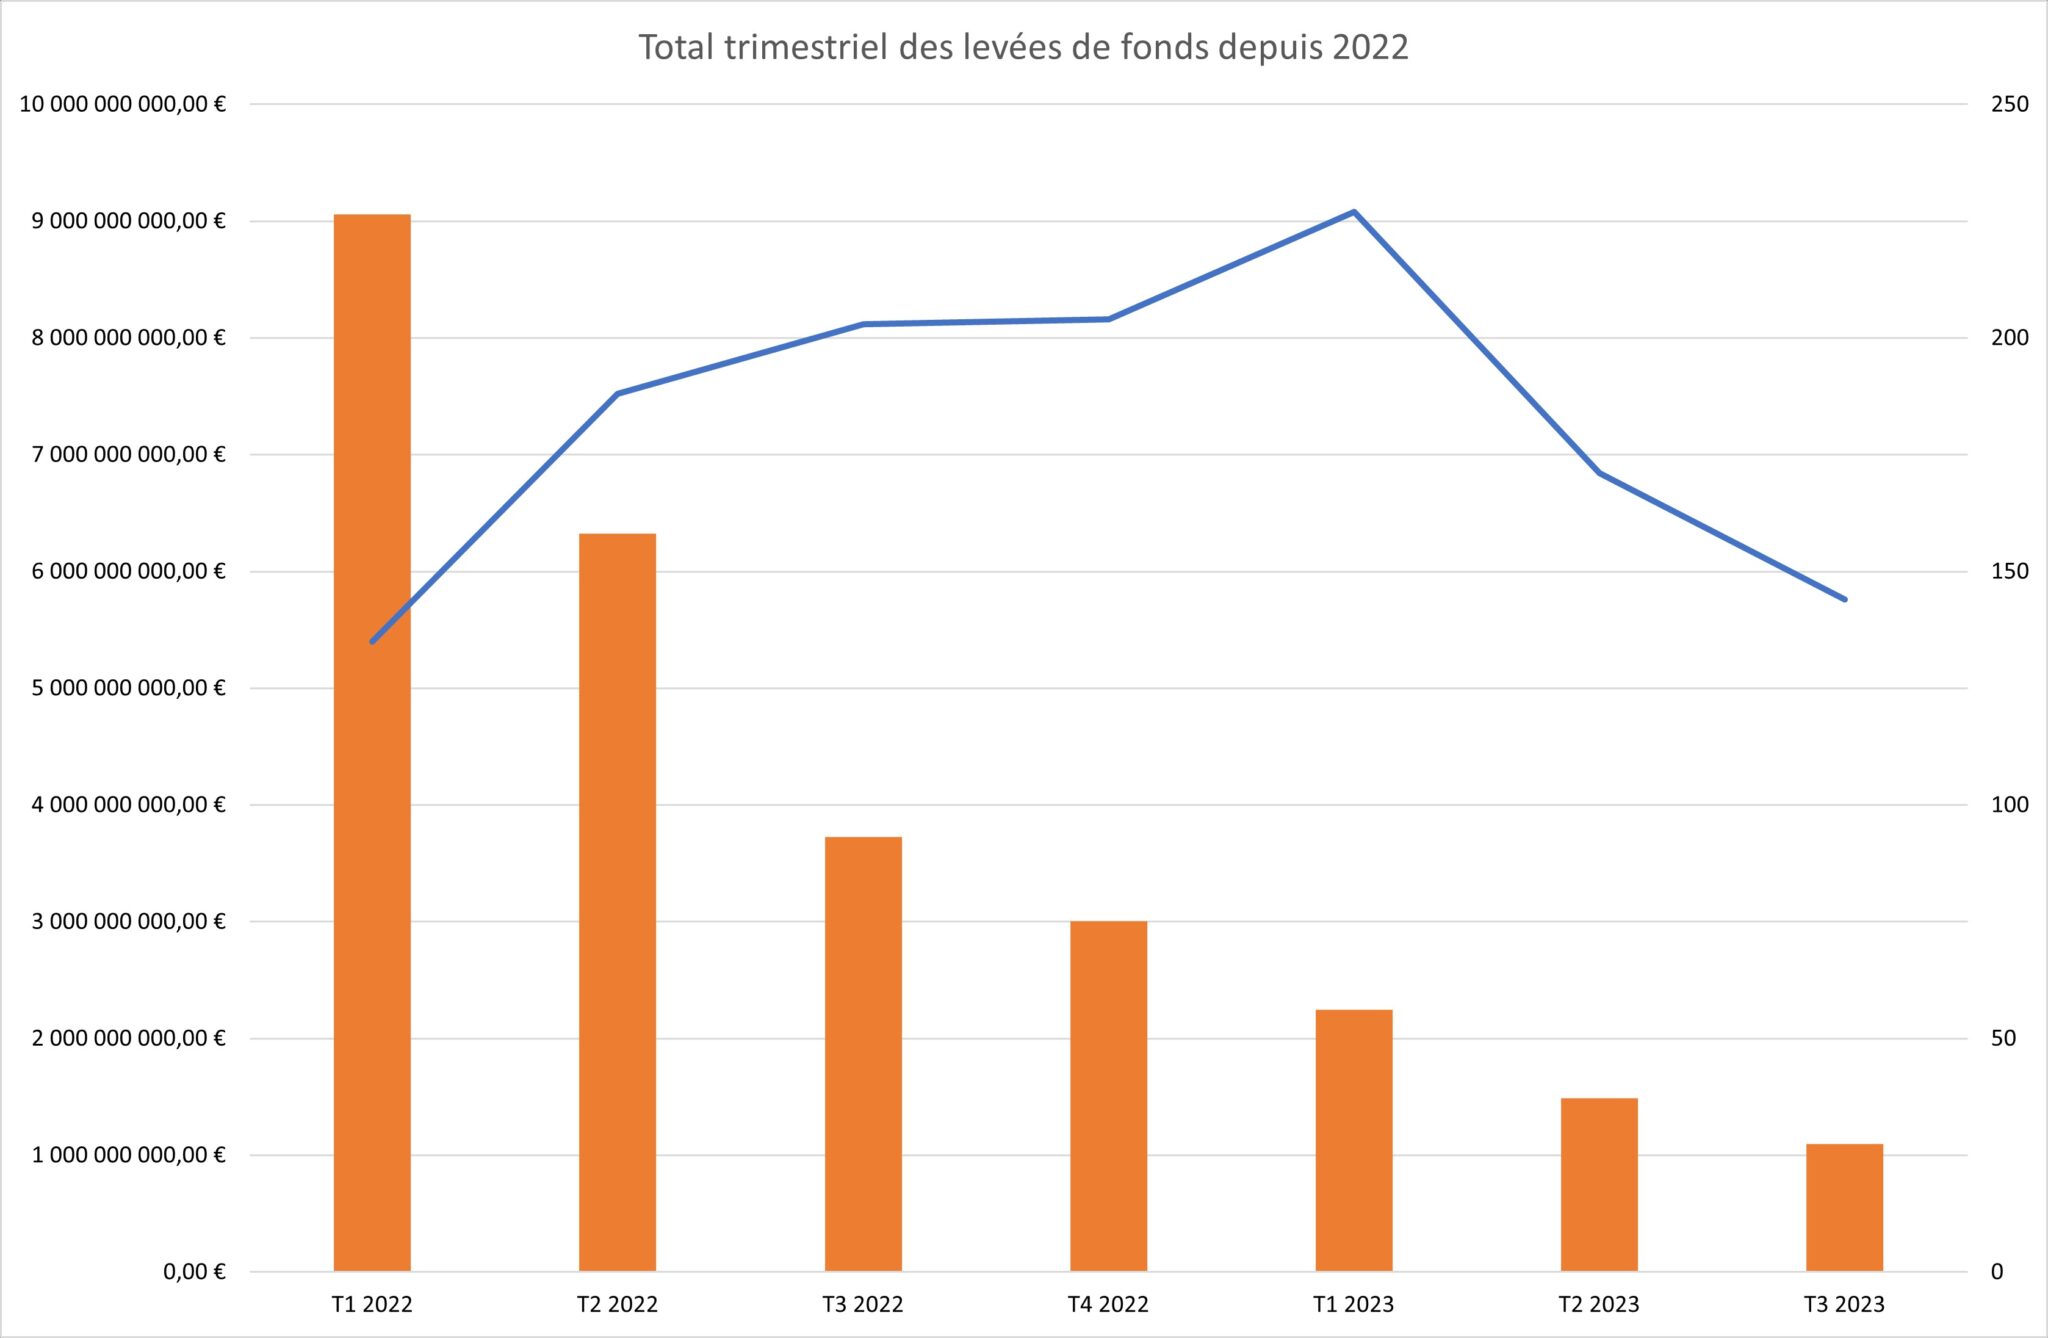 Figura 1 - Recaudación de fondos trimestral total desde 2022